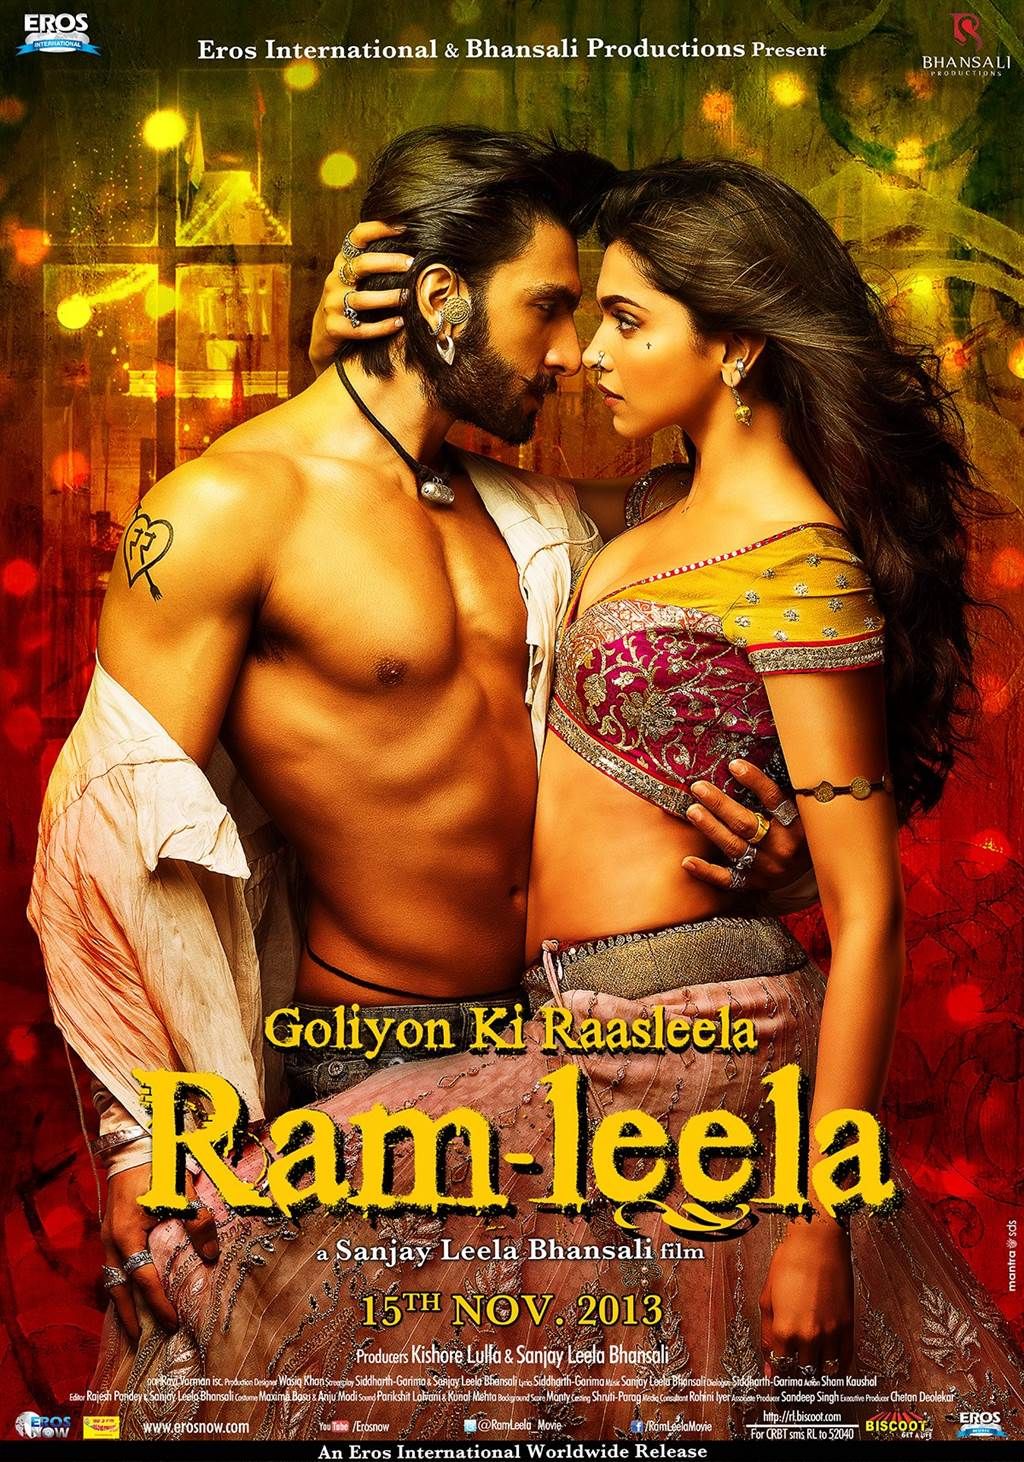 Ranveer Singh, Deepika Padukone want to revive Ram-Leela’s chemistry